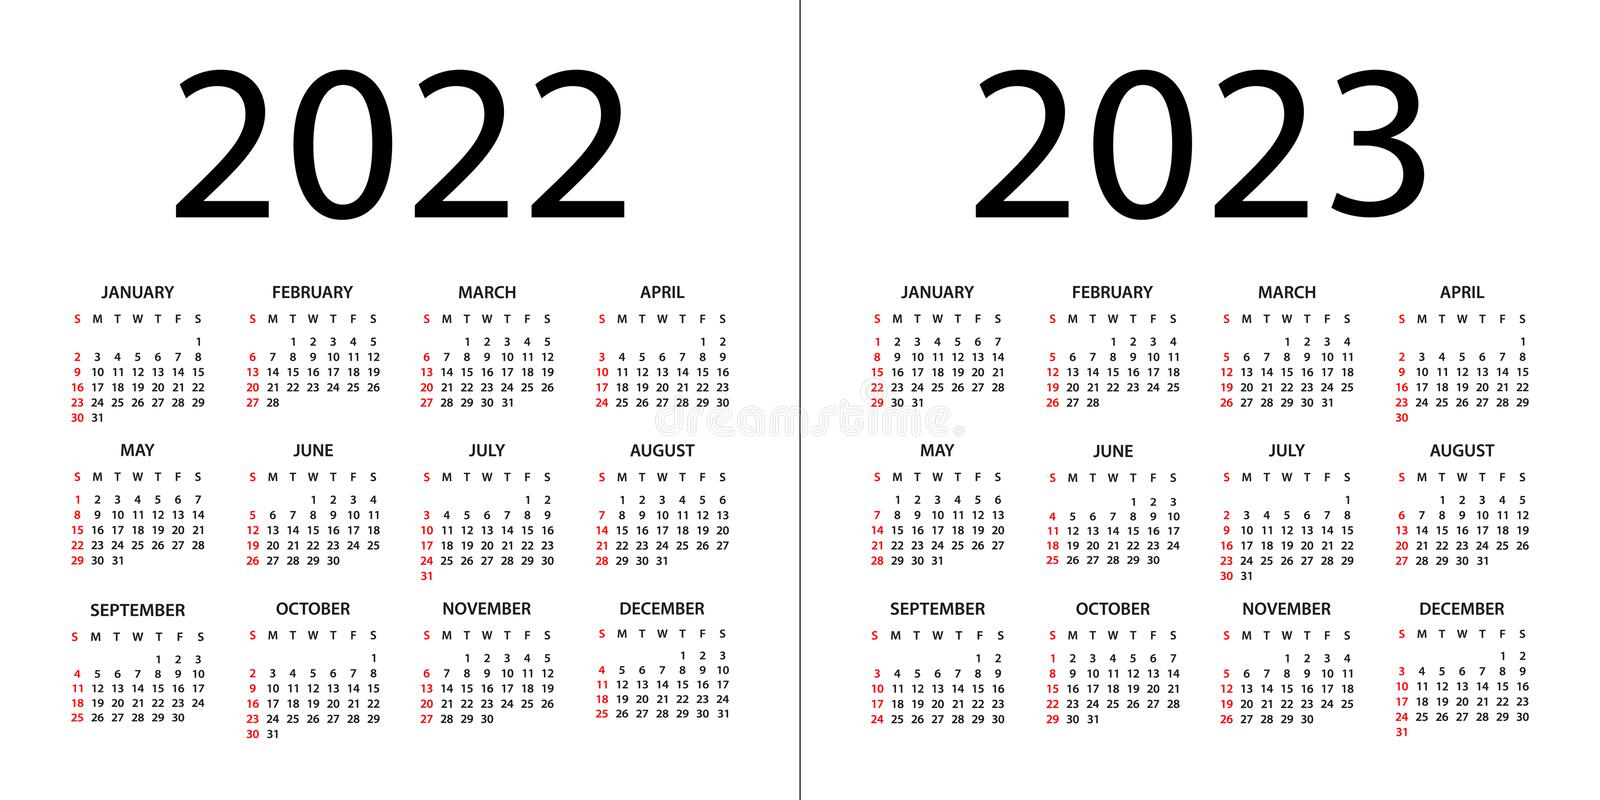 Calendario 2022 A 2023 Le calendrier 2022/2023 est disponible - LAURA-TT